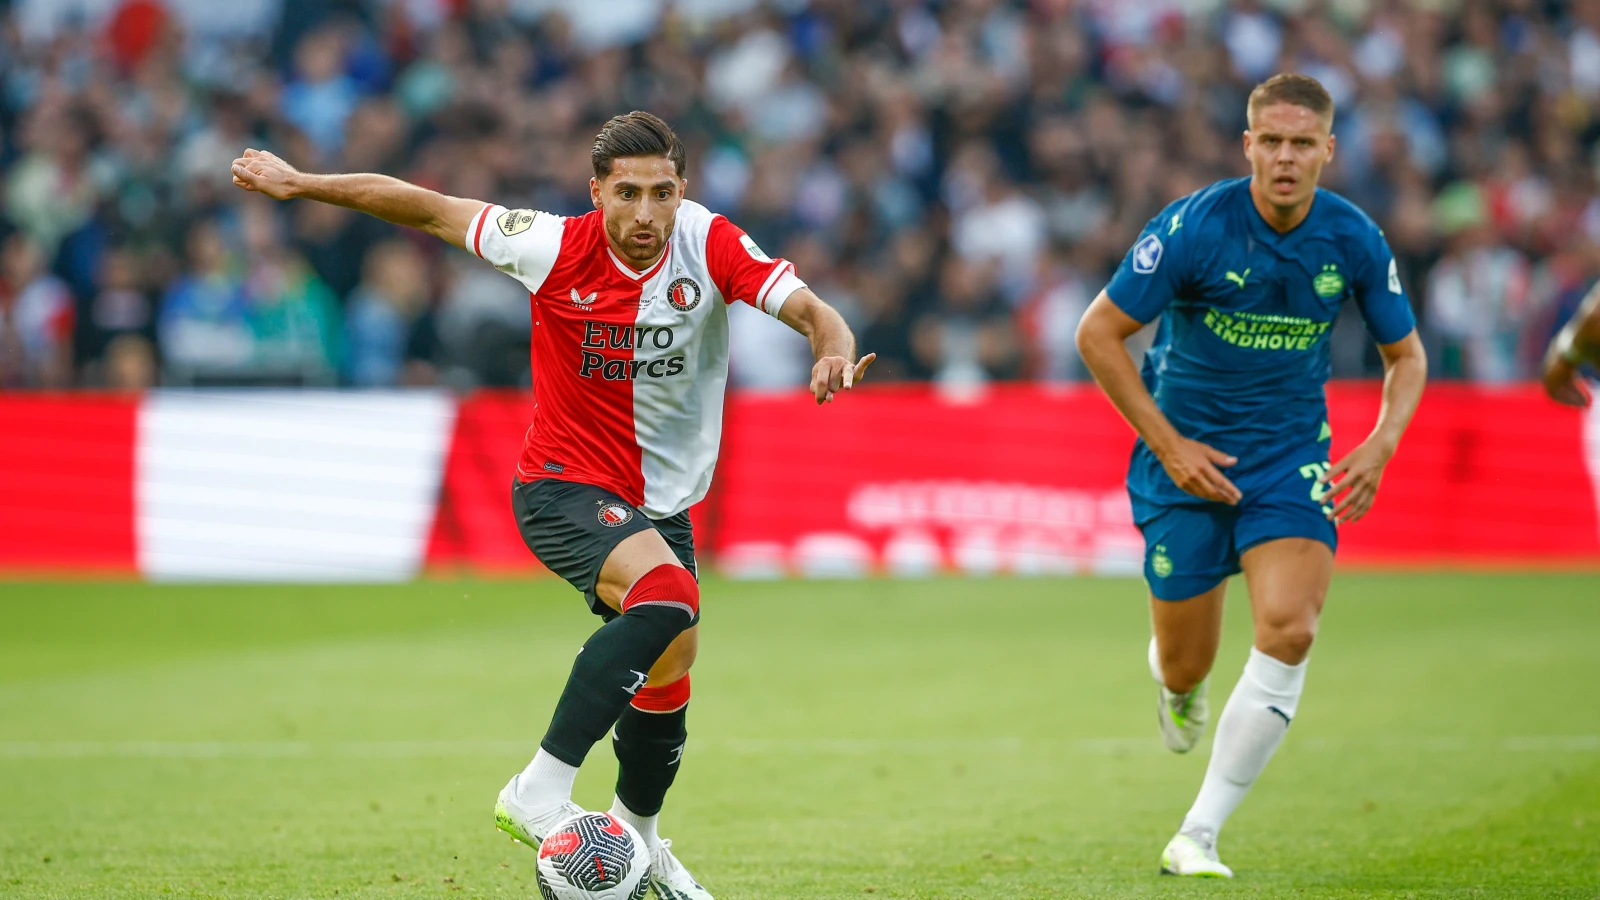 LIVE | Feyenoord - PSV 0-1 | Einde wedstrijd